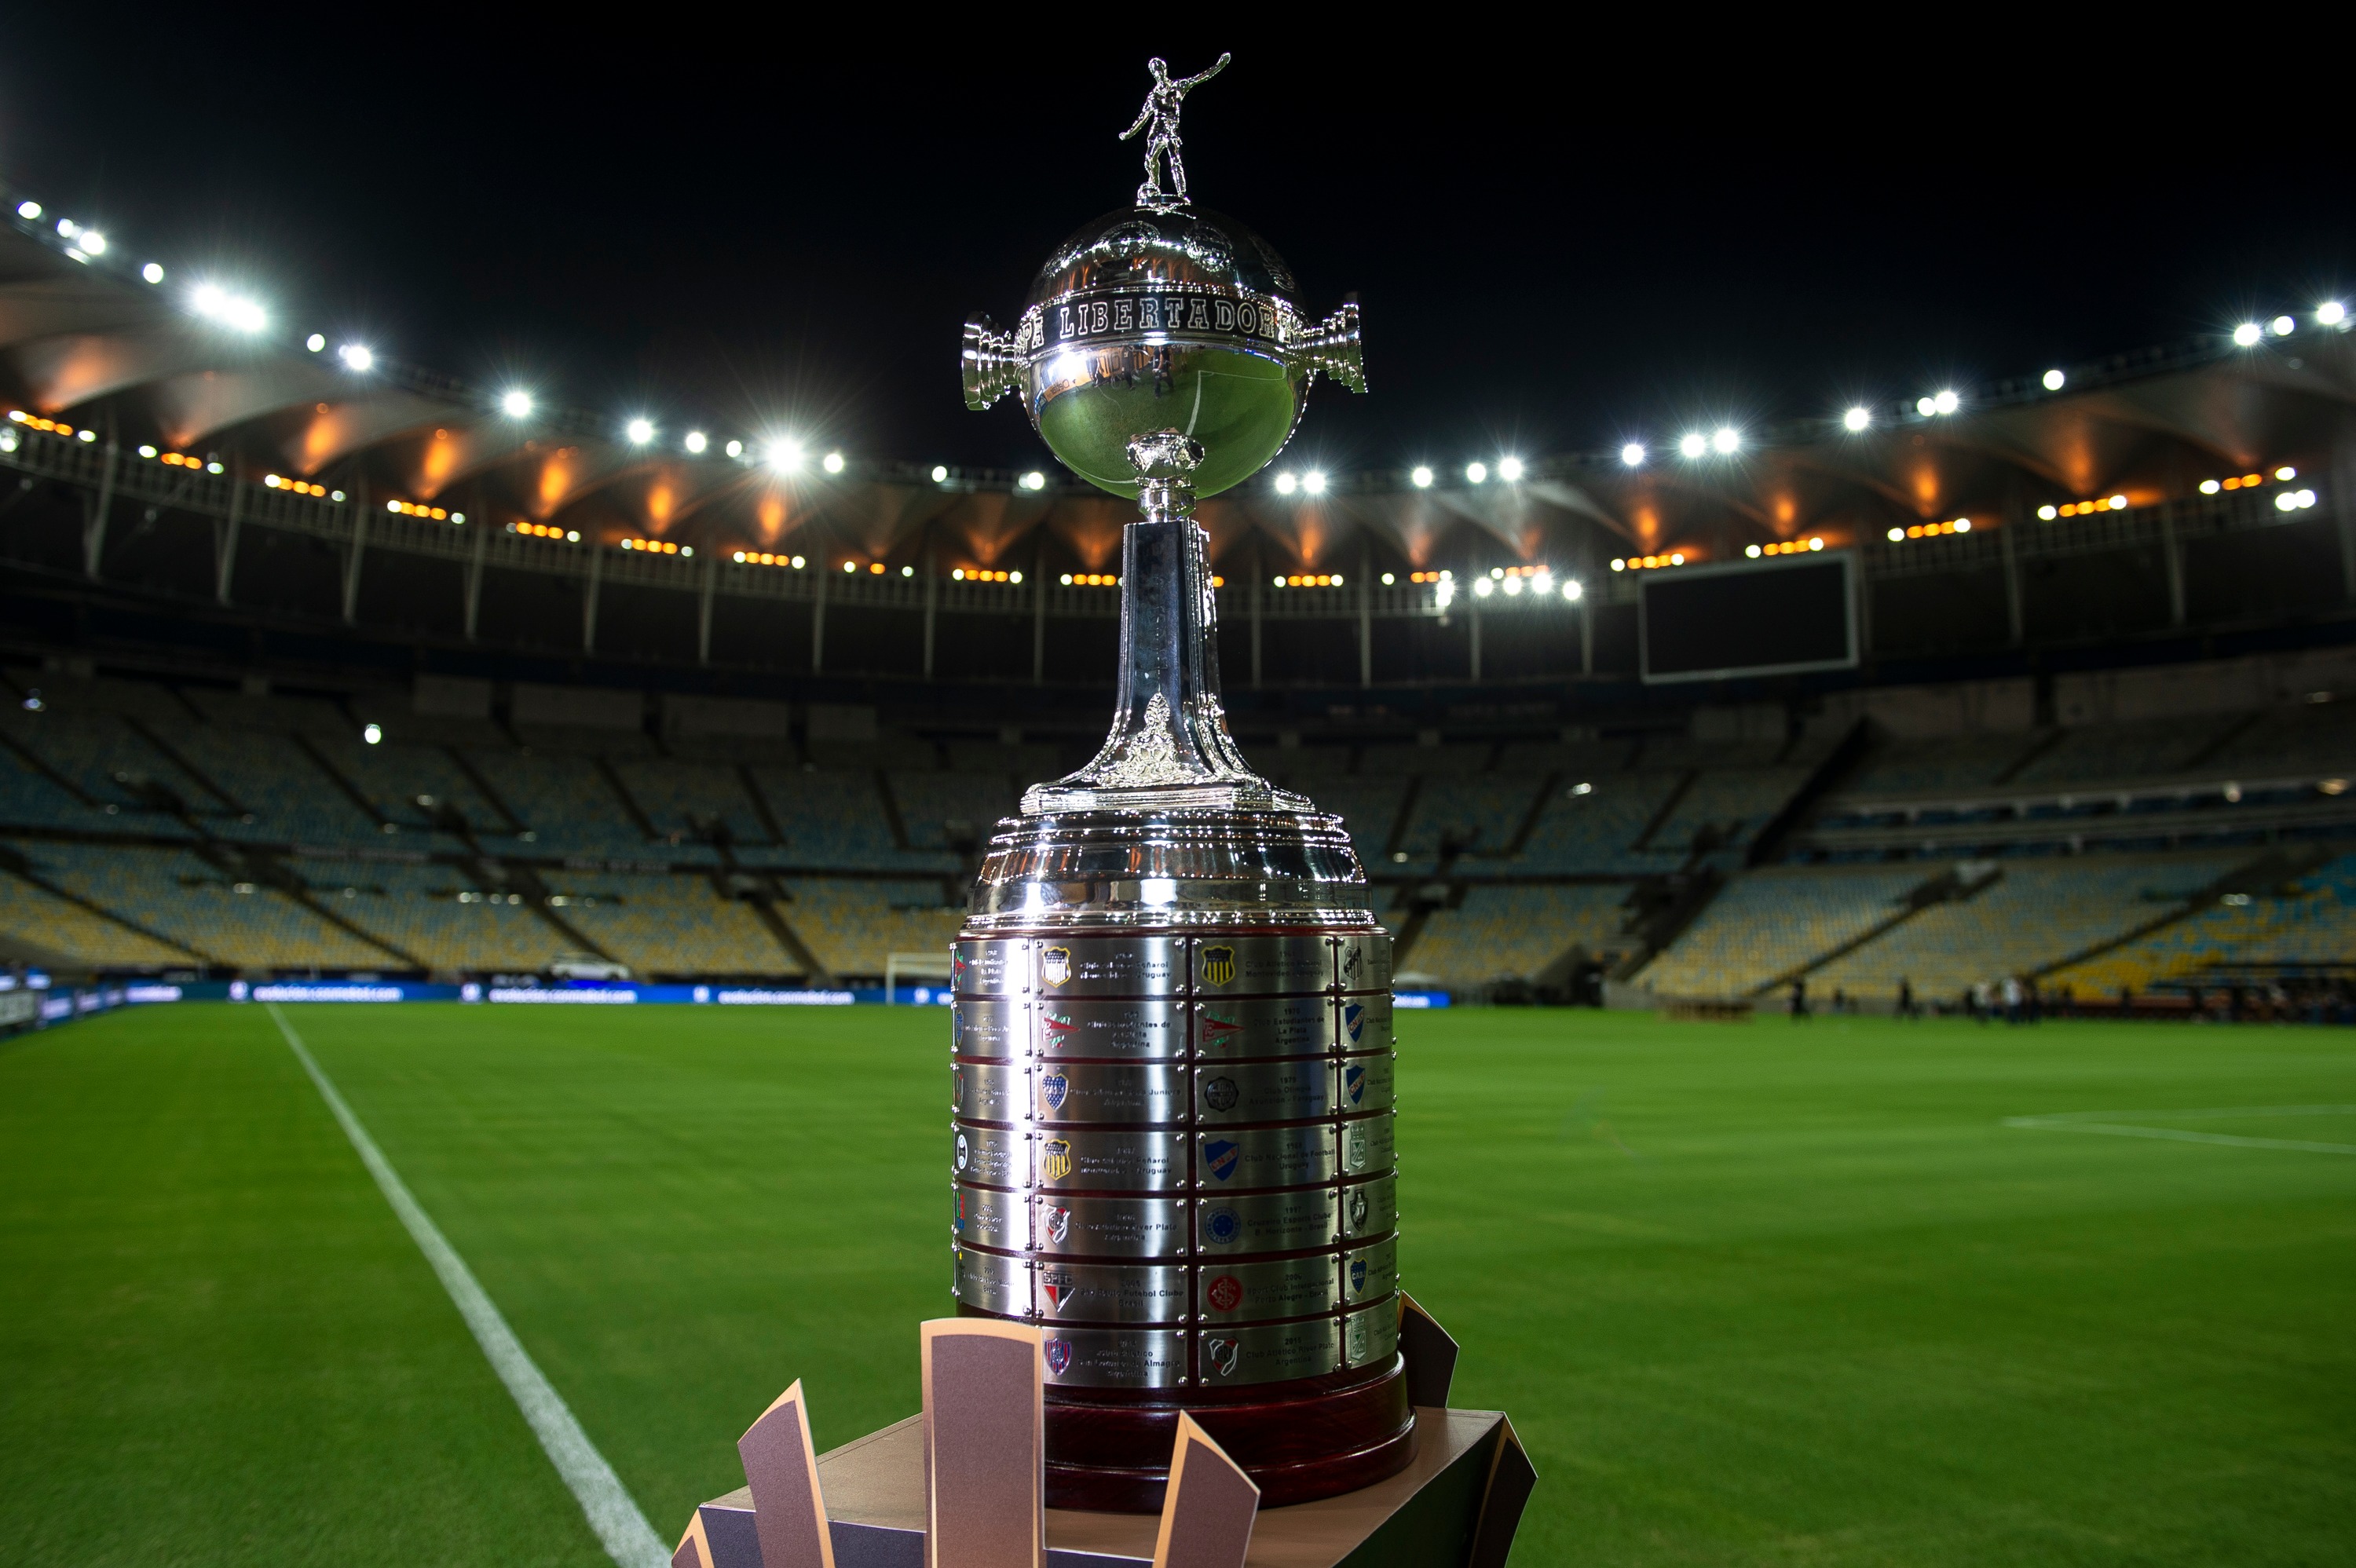 Retrospectiva: as 4 últimas finais da Libertadores